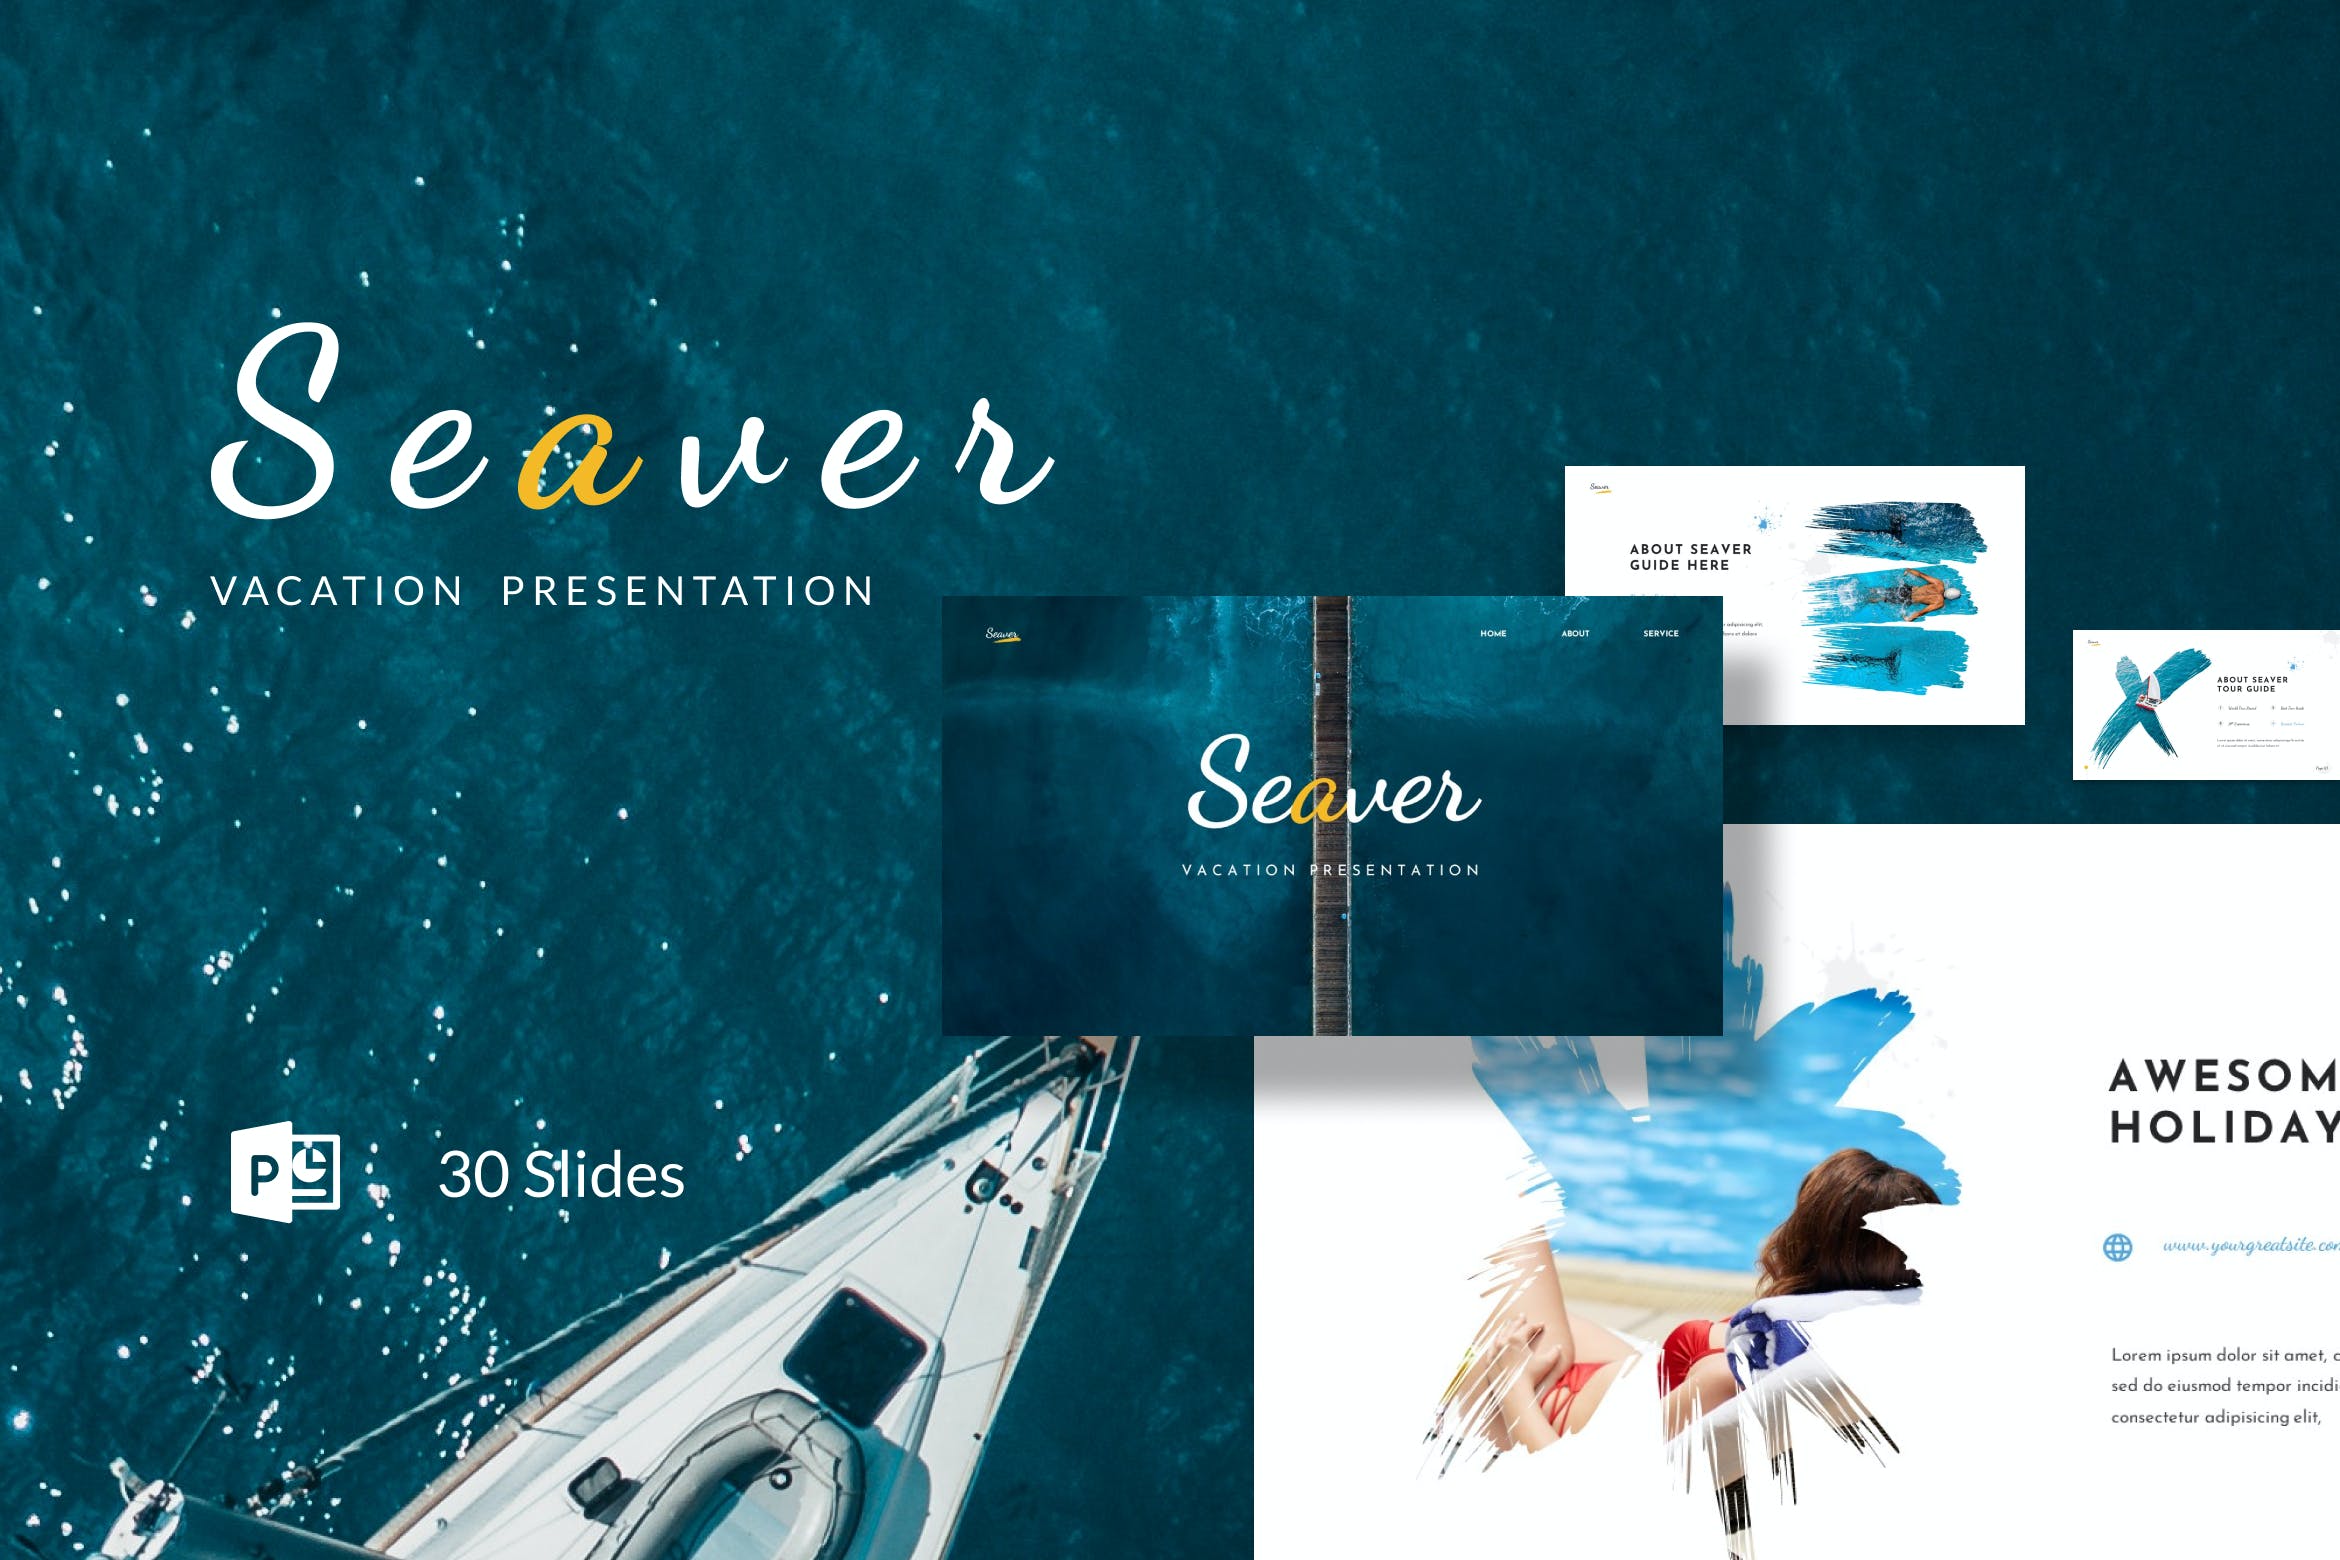 旅行度假笔刷PPT幻灯片模板素材 Seaver – Vacation Presentation PowerPoint 幻灯图表 第1张